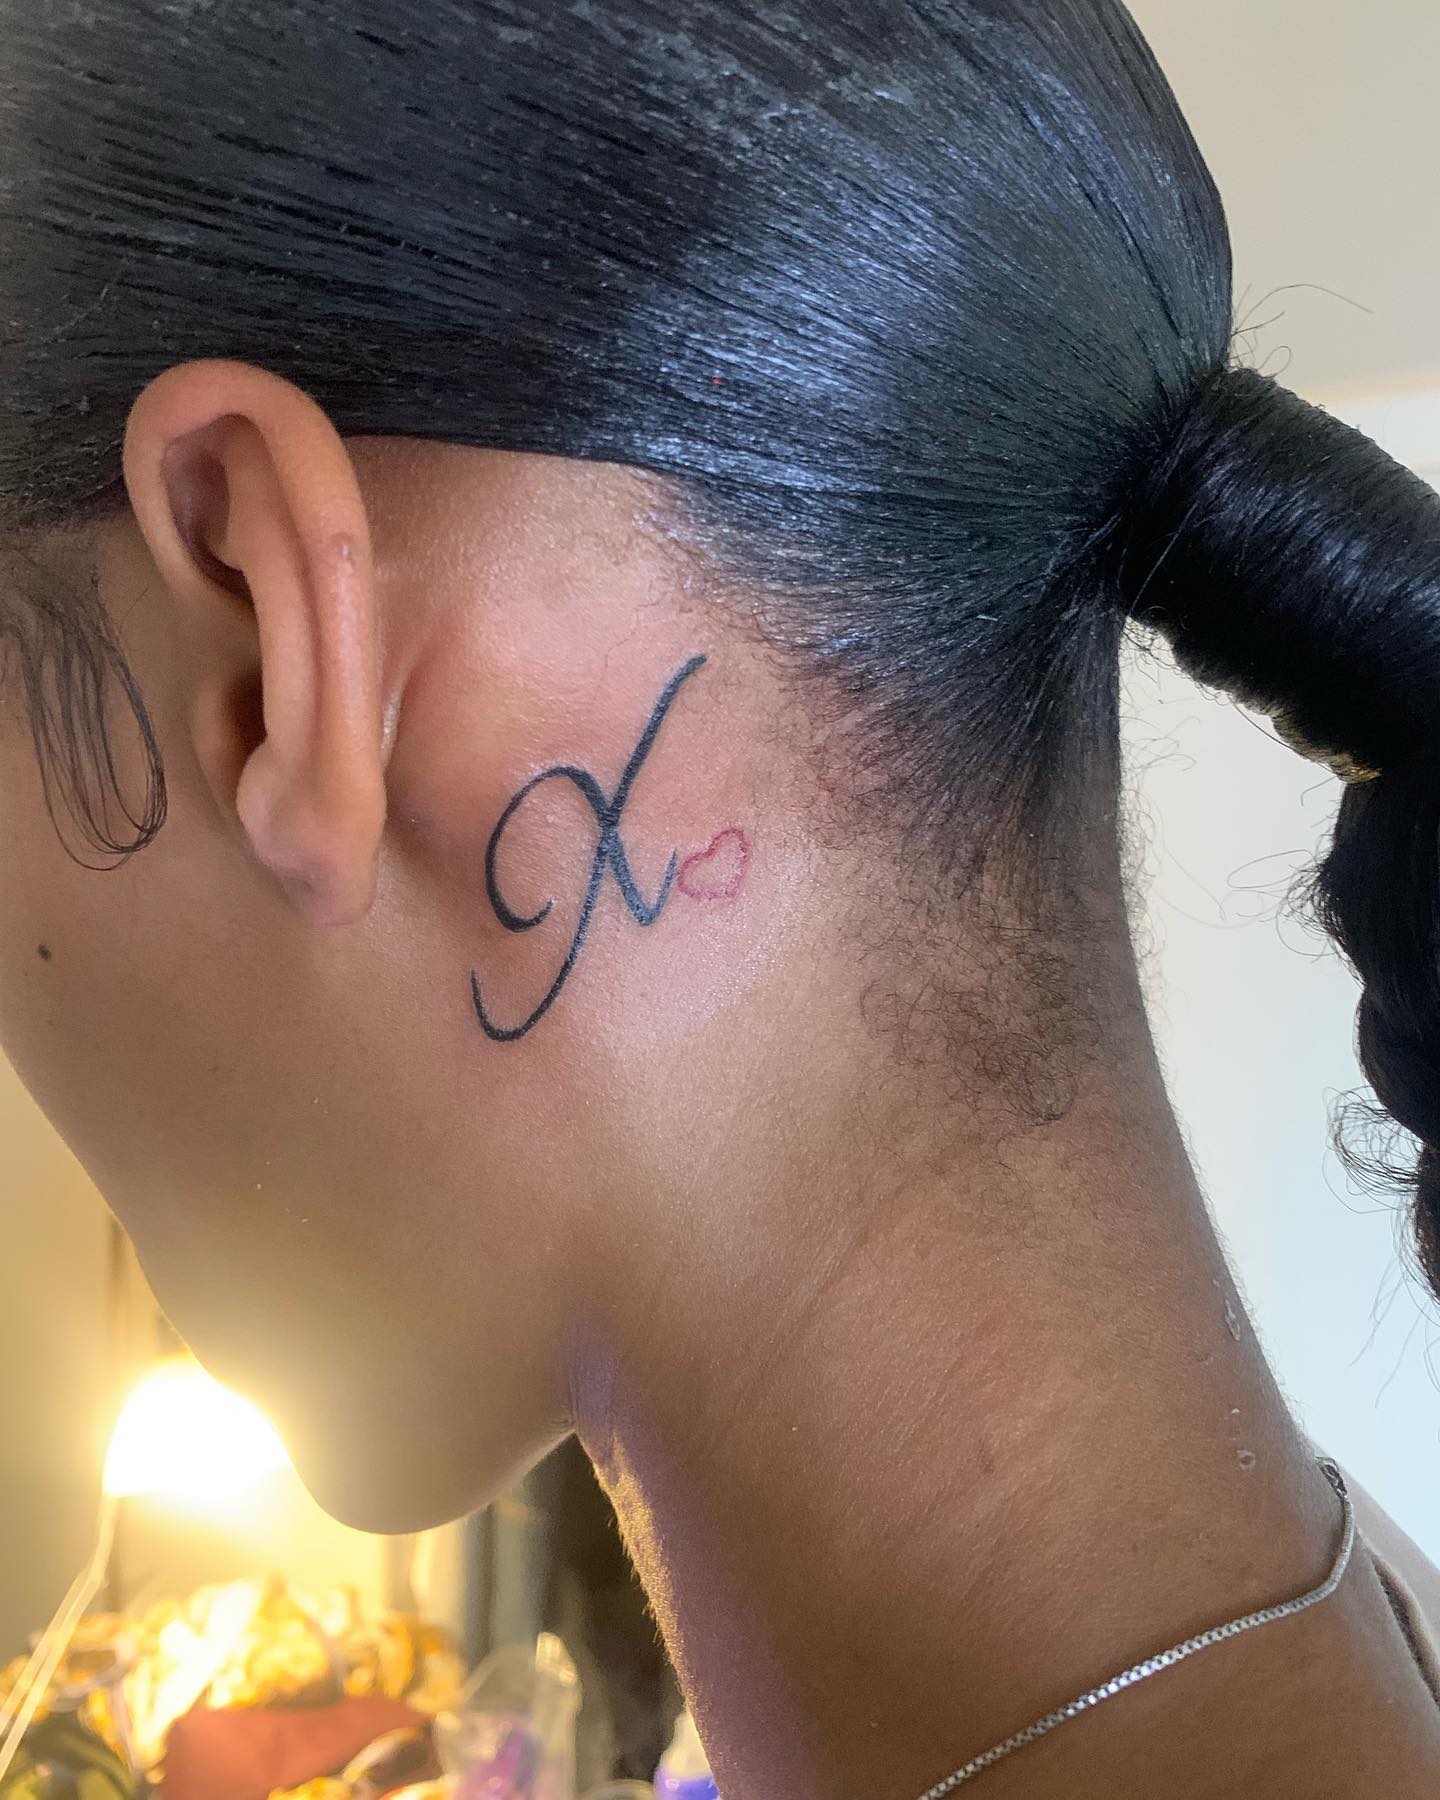 Tatuaje detrás de la oreja inspirado en una letra.